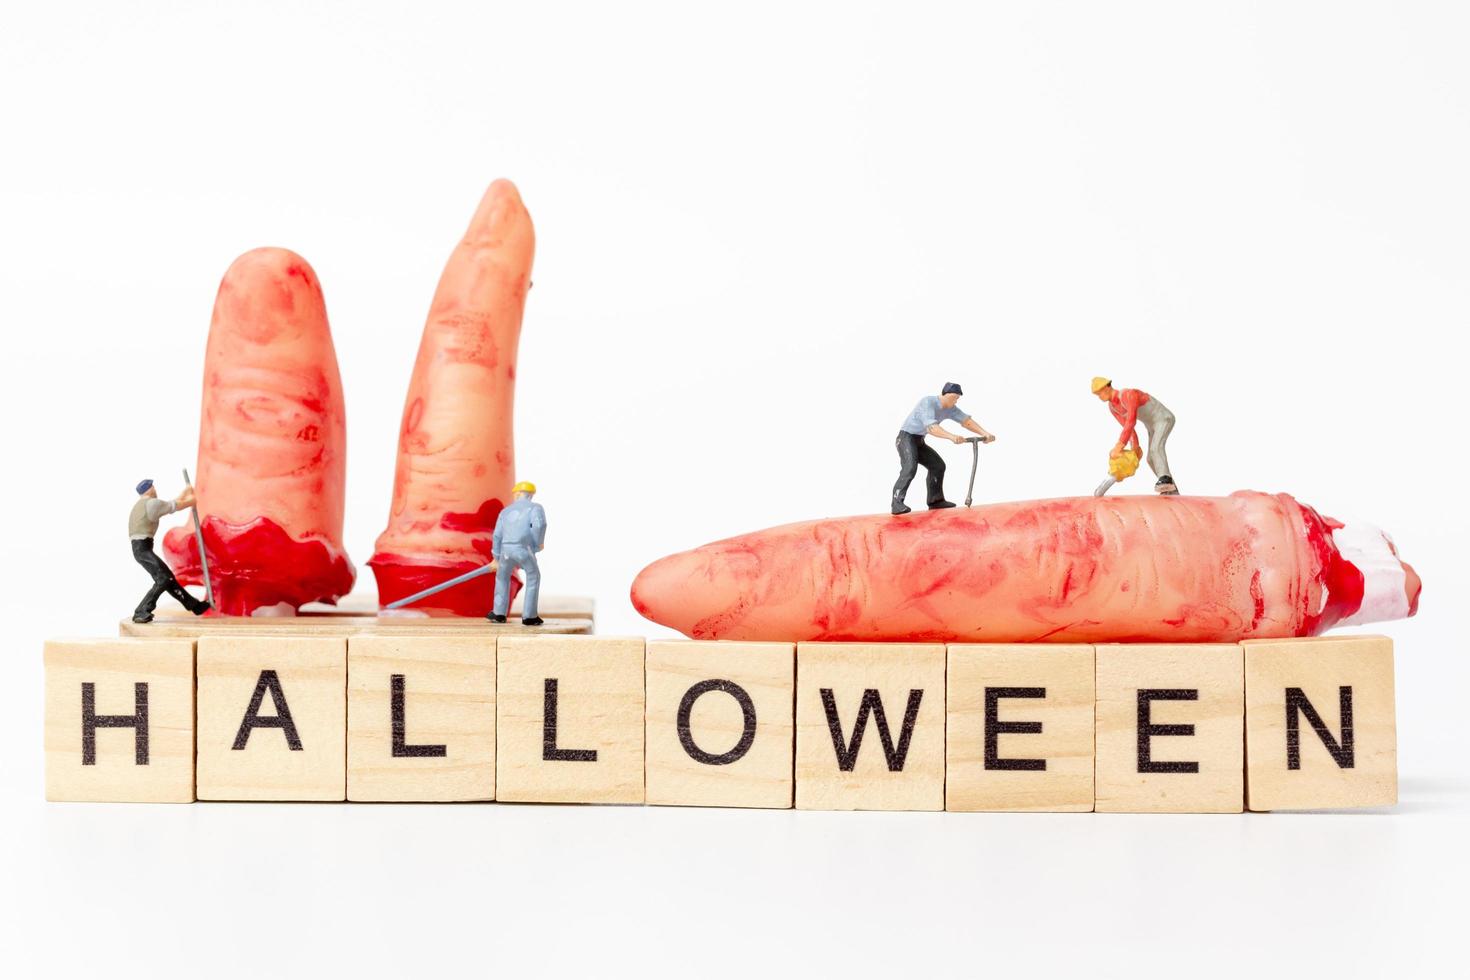 Travailleurs miniatures s'associent pour créer des accessoires de fête d'halloween avec des blocs de bois avec le texte halloween sur fond blanc photo